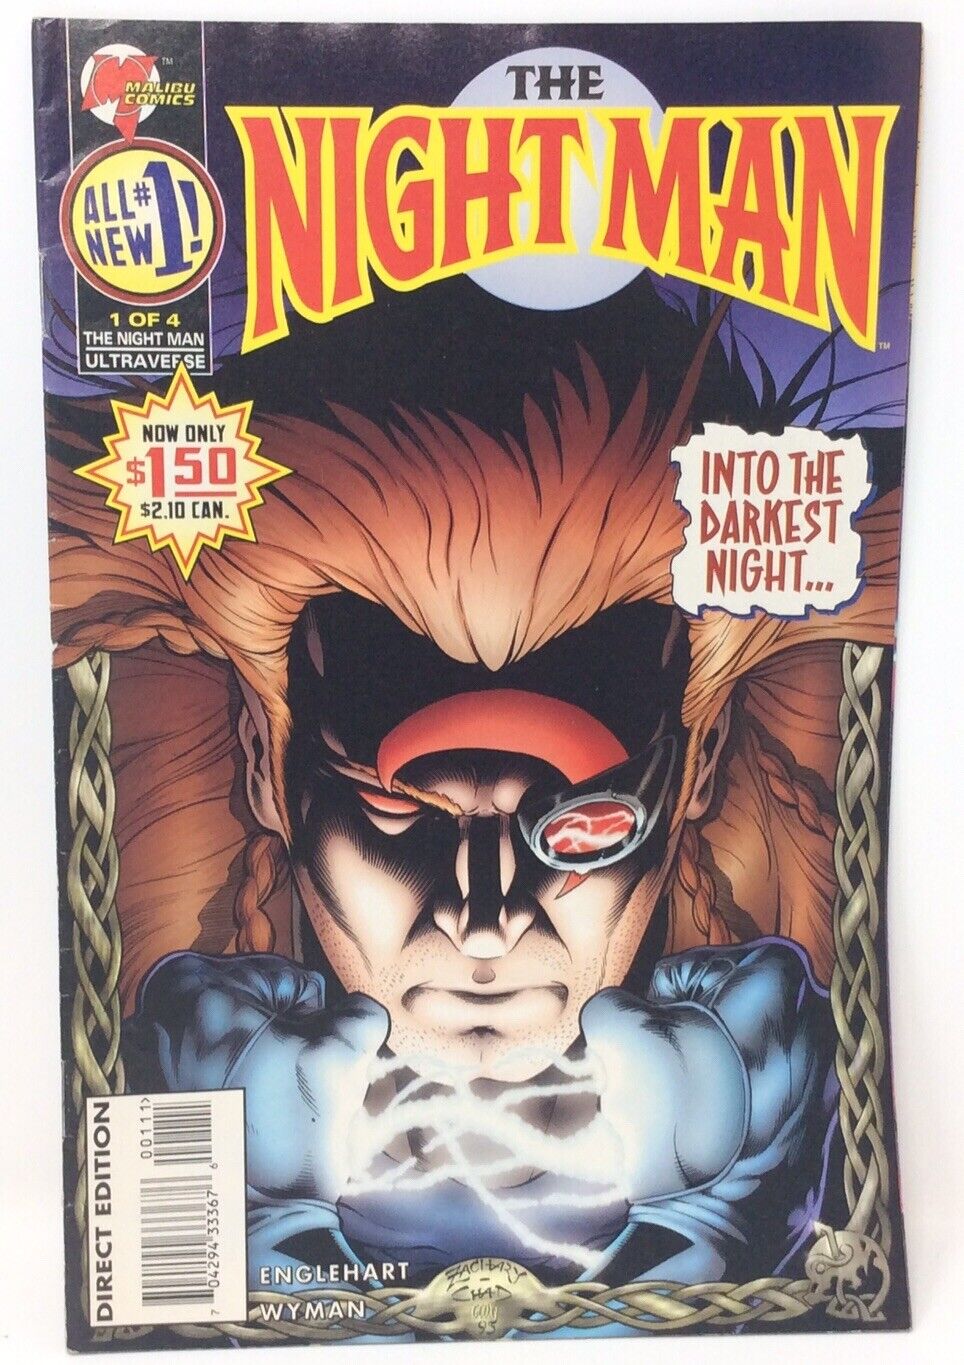 The Night Man Vol.2 #1 Malibu Comics (1995) “INTO THE DARKEST NIGHT”